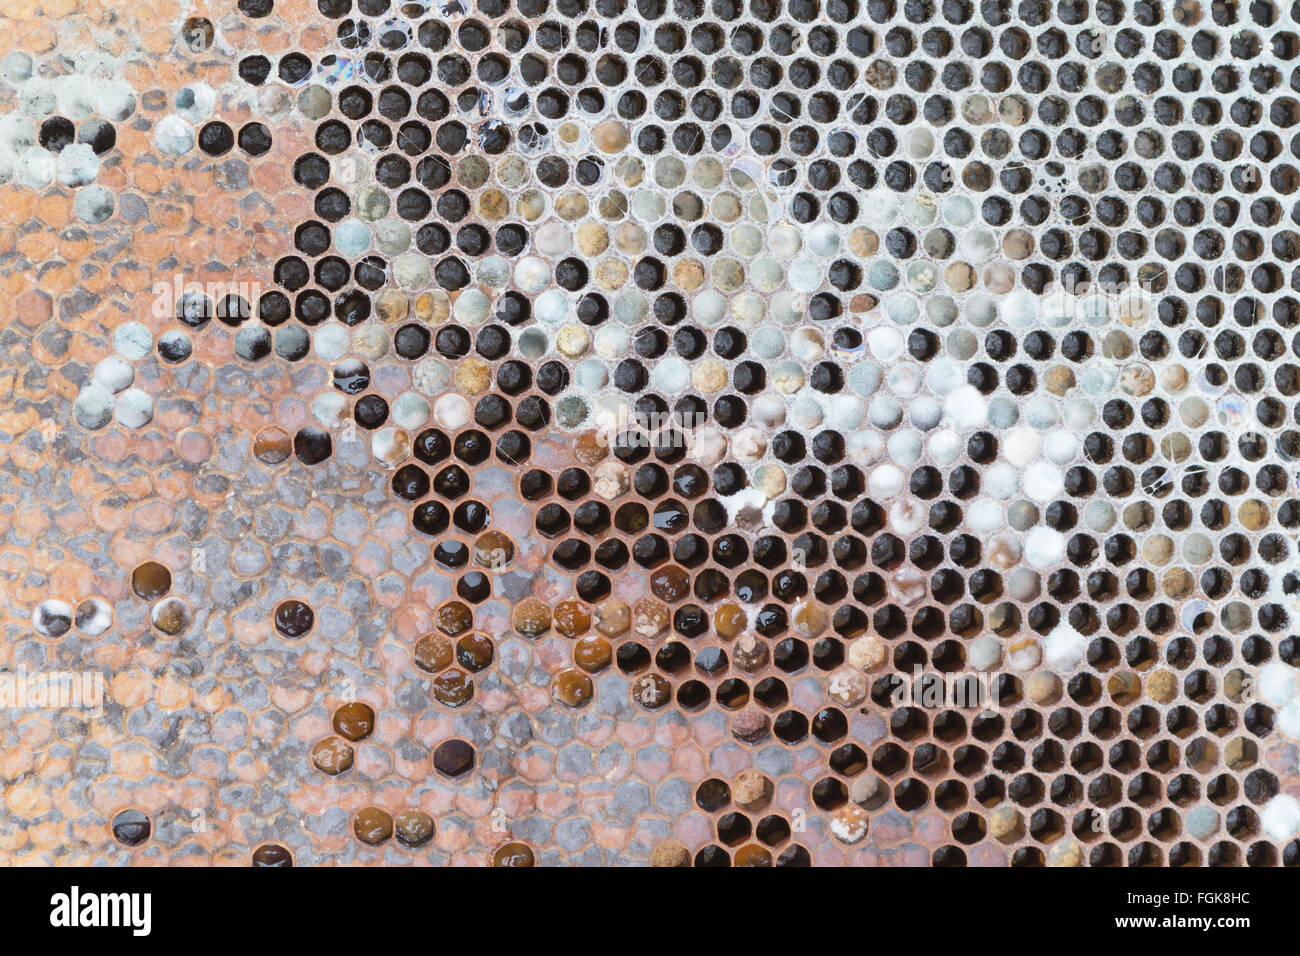 Telaio di alveare morto da honeybee colony all'interno di alveare dove l'acqua piovana è penetrata l'alveare durante il periodo invernale Foto Stock